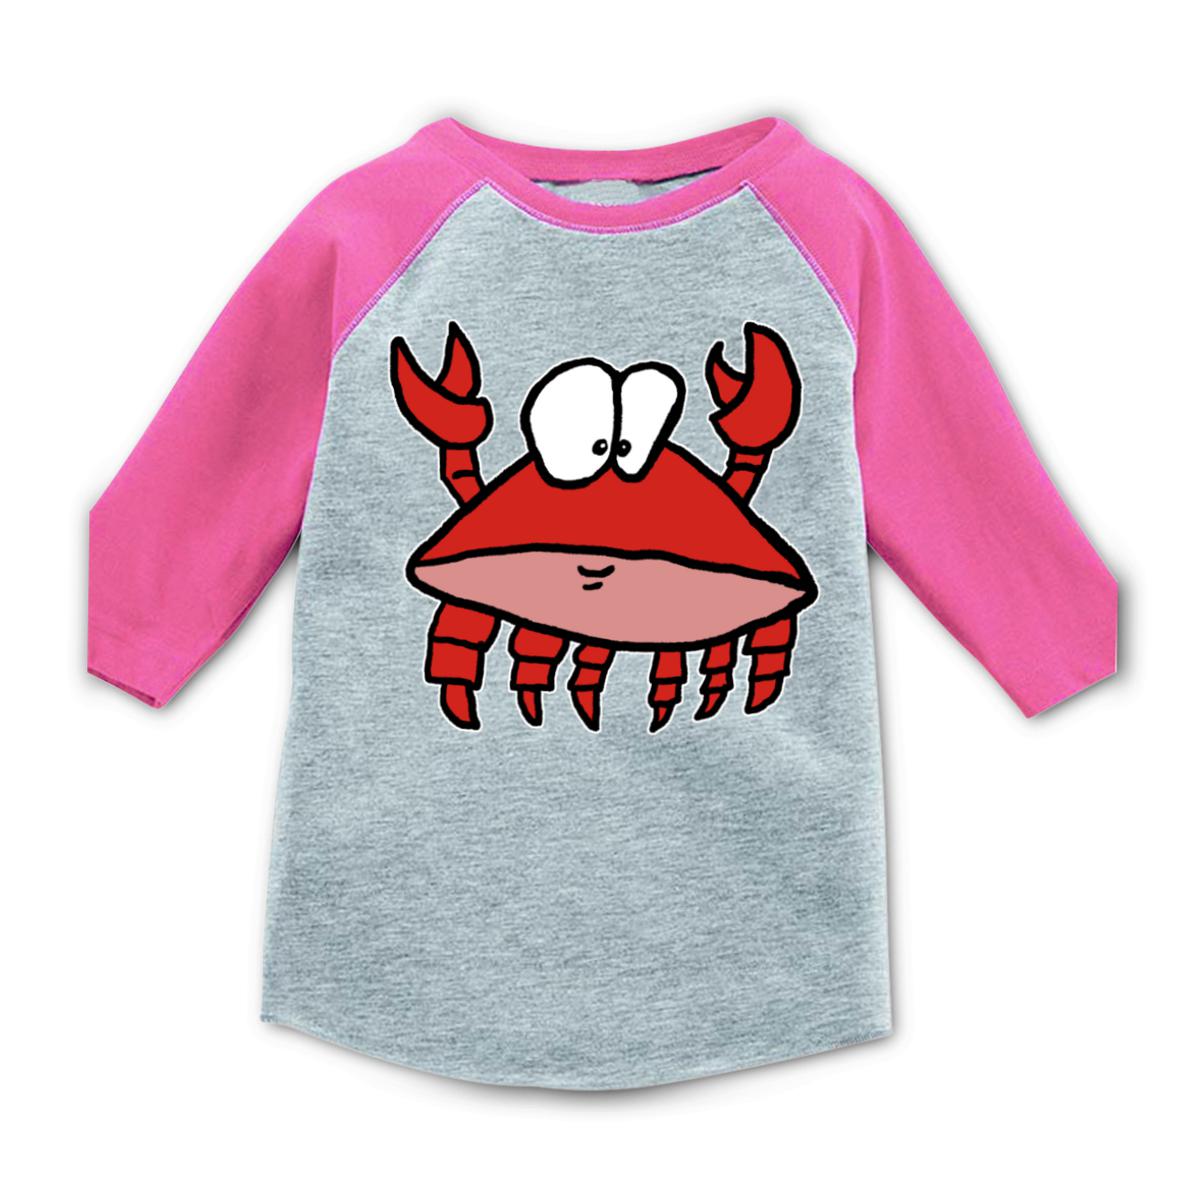 Crab 2.0 Toddler Raglan Tee 2T heather-pink